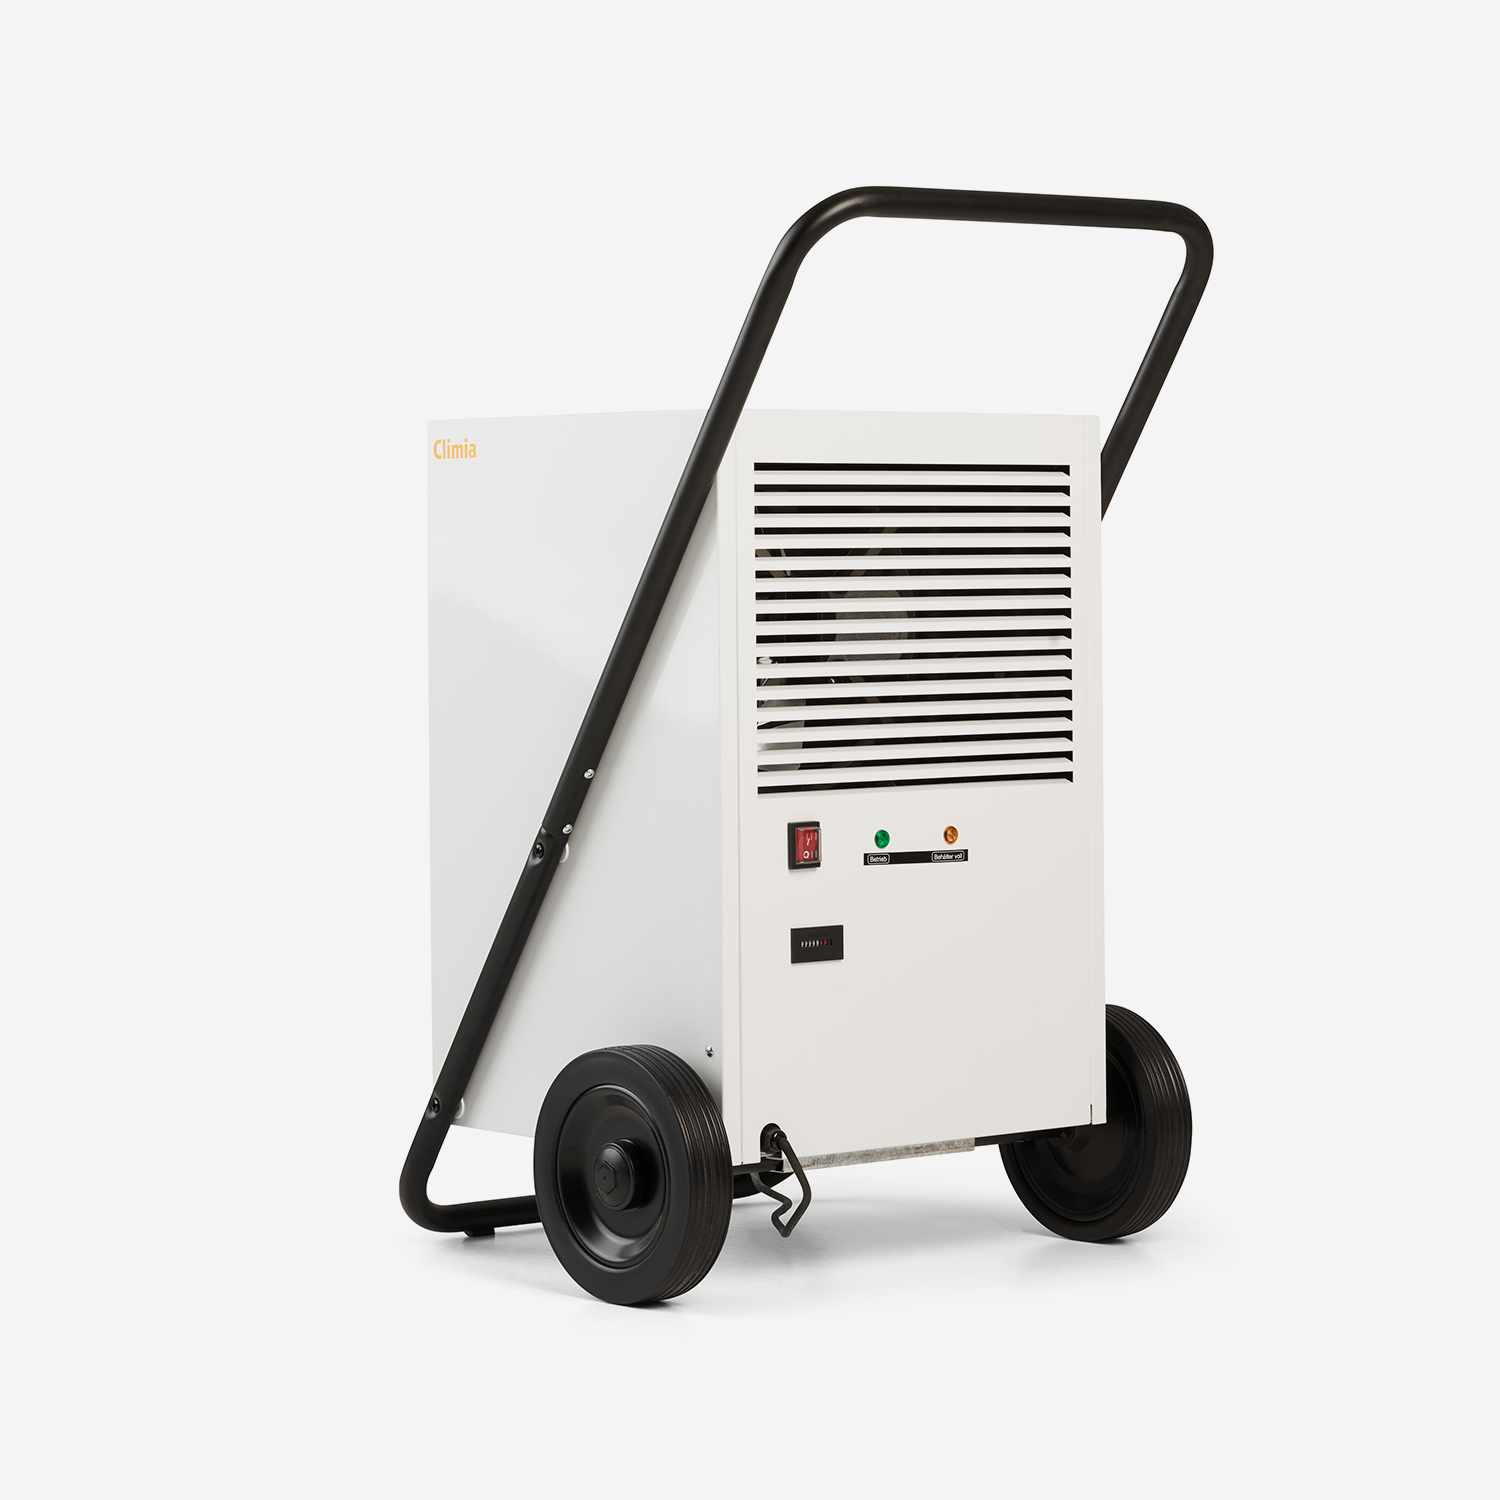 Climia CTK 500-600 R290 - Kondenstrockner mit Heißgasautomatik für die professionelle Bautrocknung